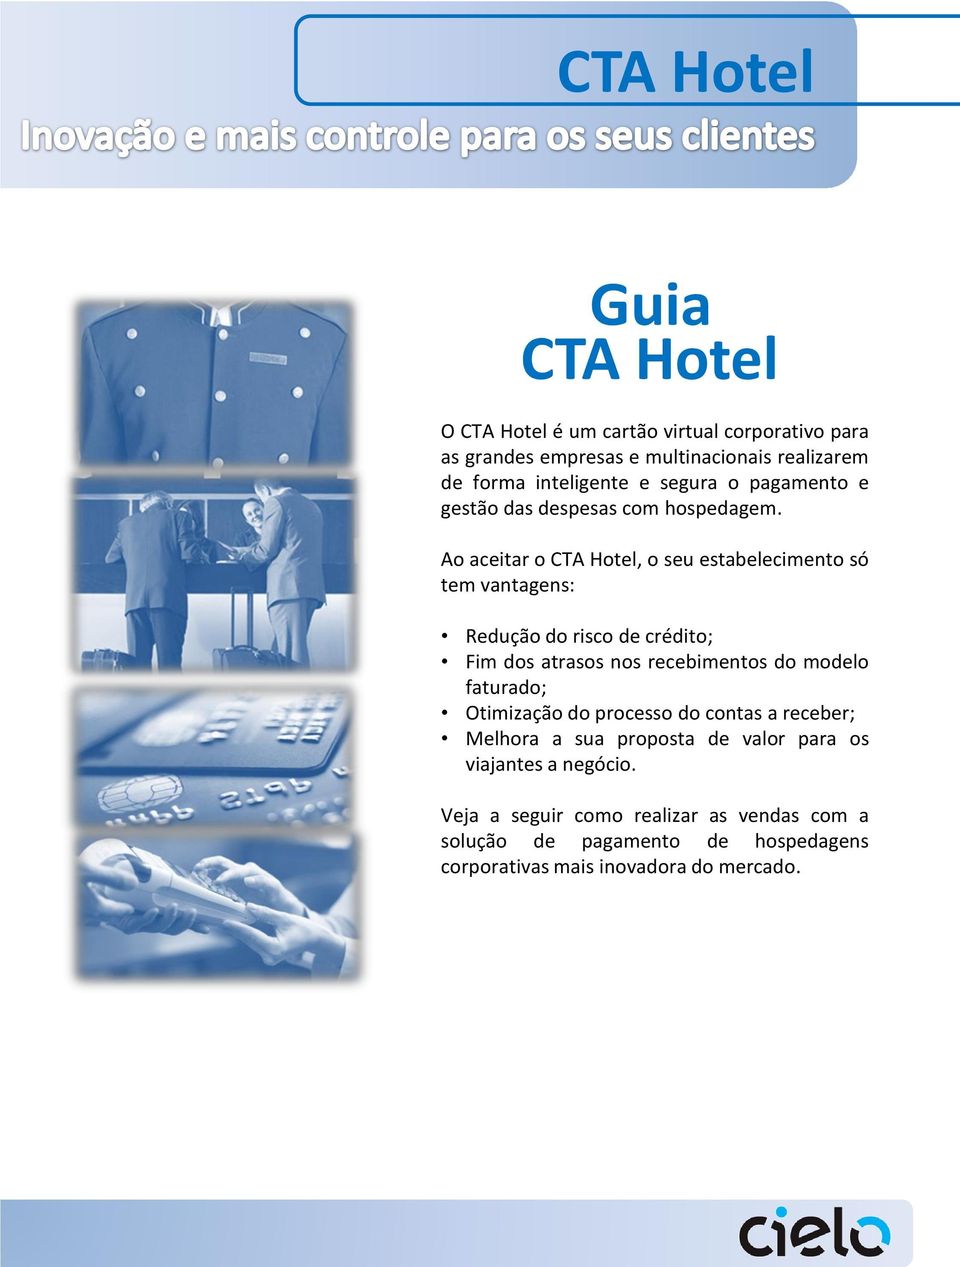 Ao aceitar o CTA Hotel, o seu estabelecimento só tem vantagens: Redução do risco de crédito; Fim dos atrasos nos recebimentos do modelo